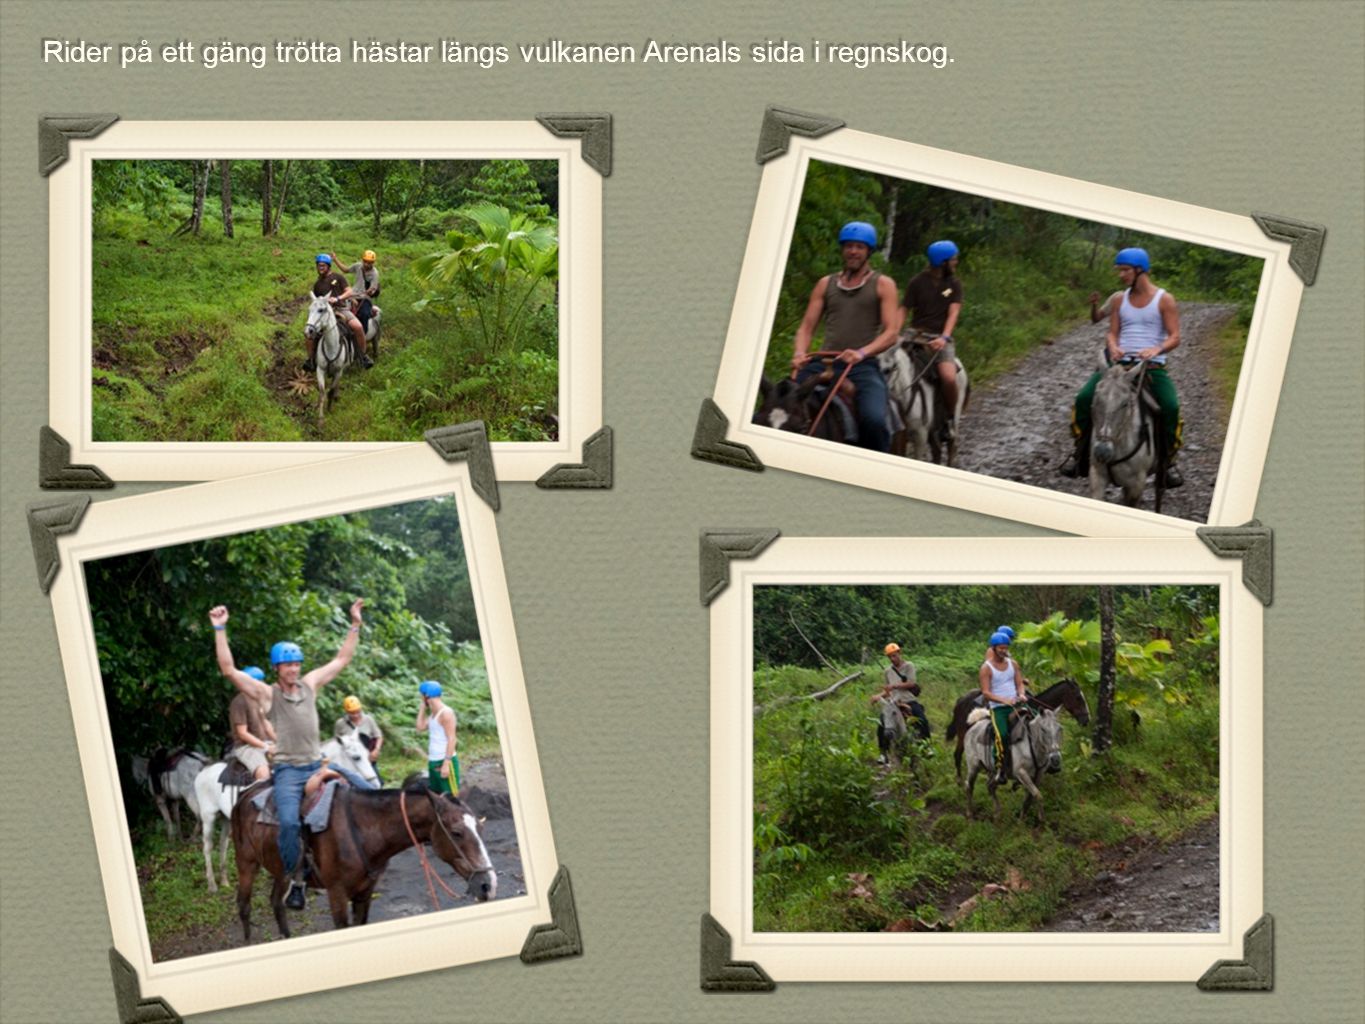 Rider på ett gäng trötta hästar längs vulkanen Arenals sida i regnskog.